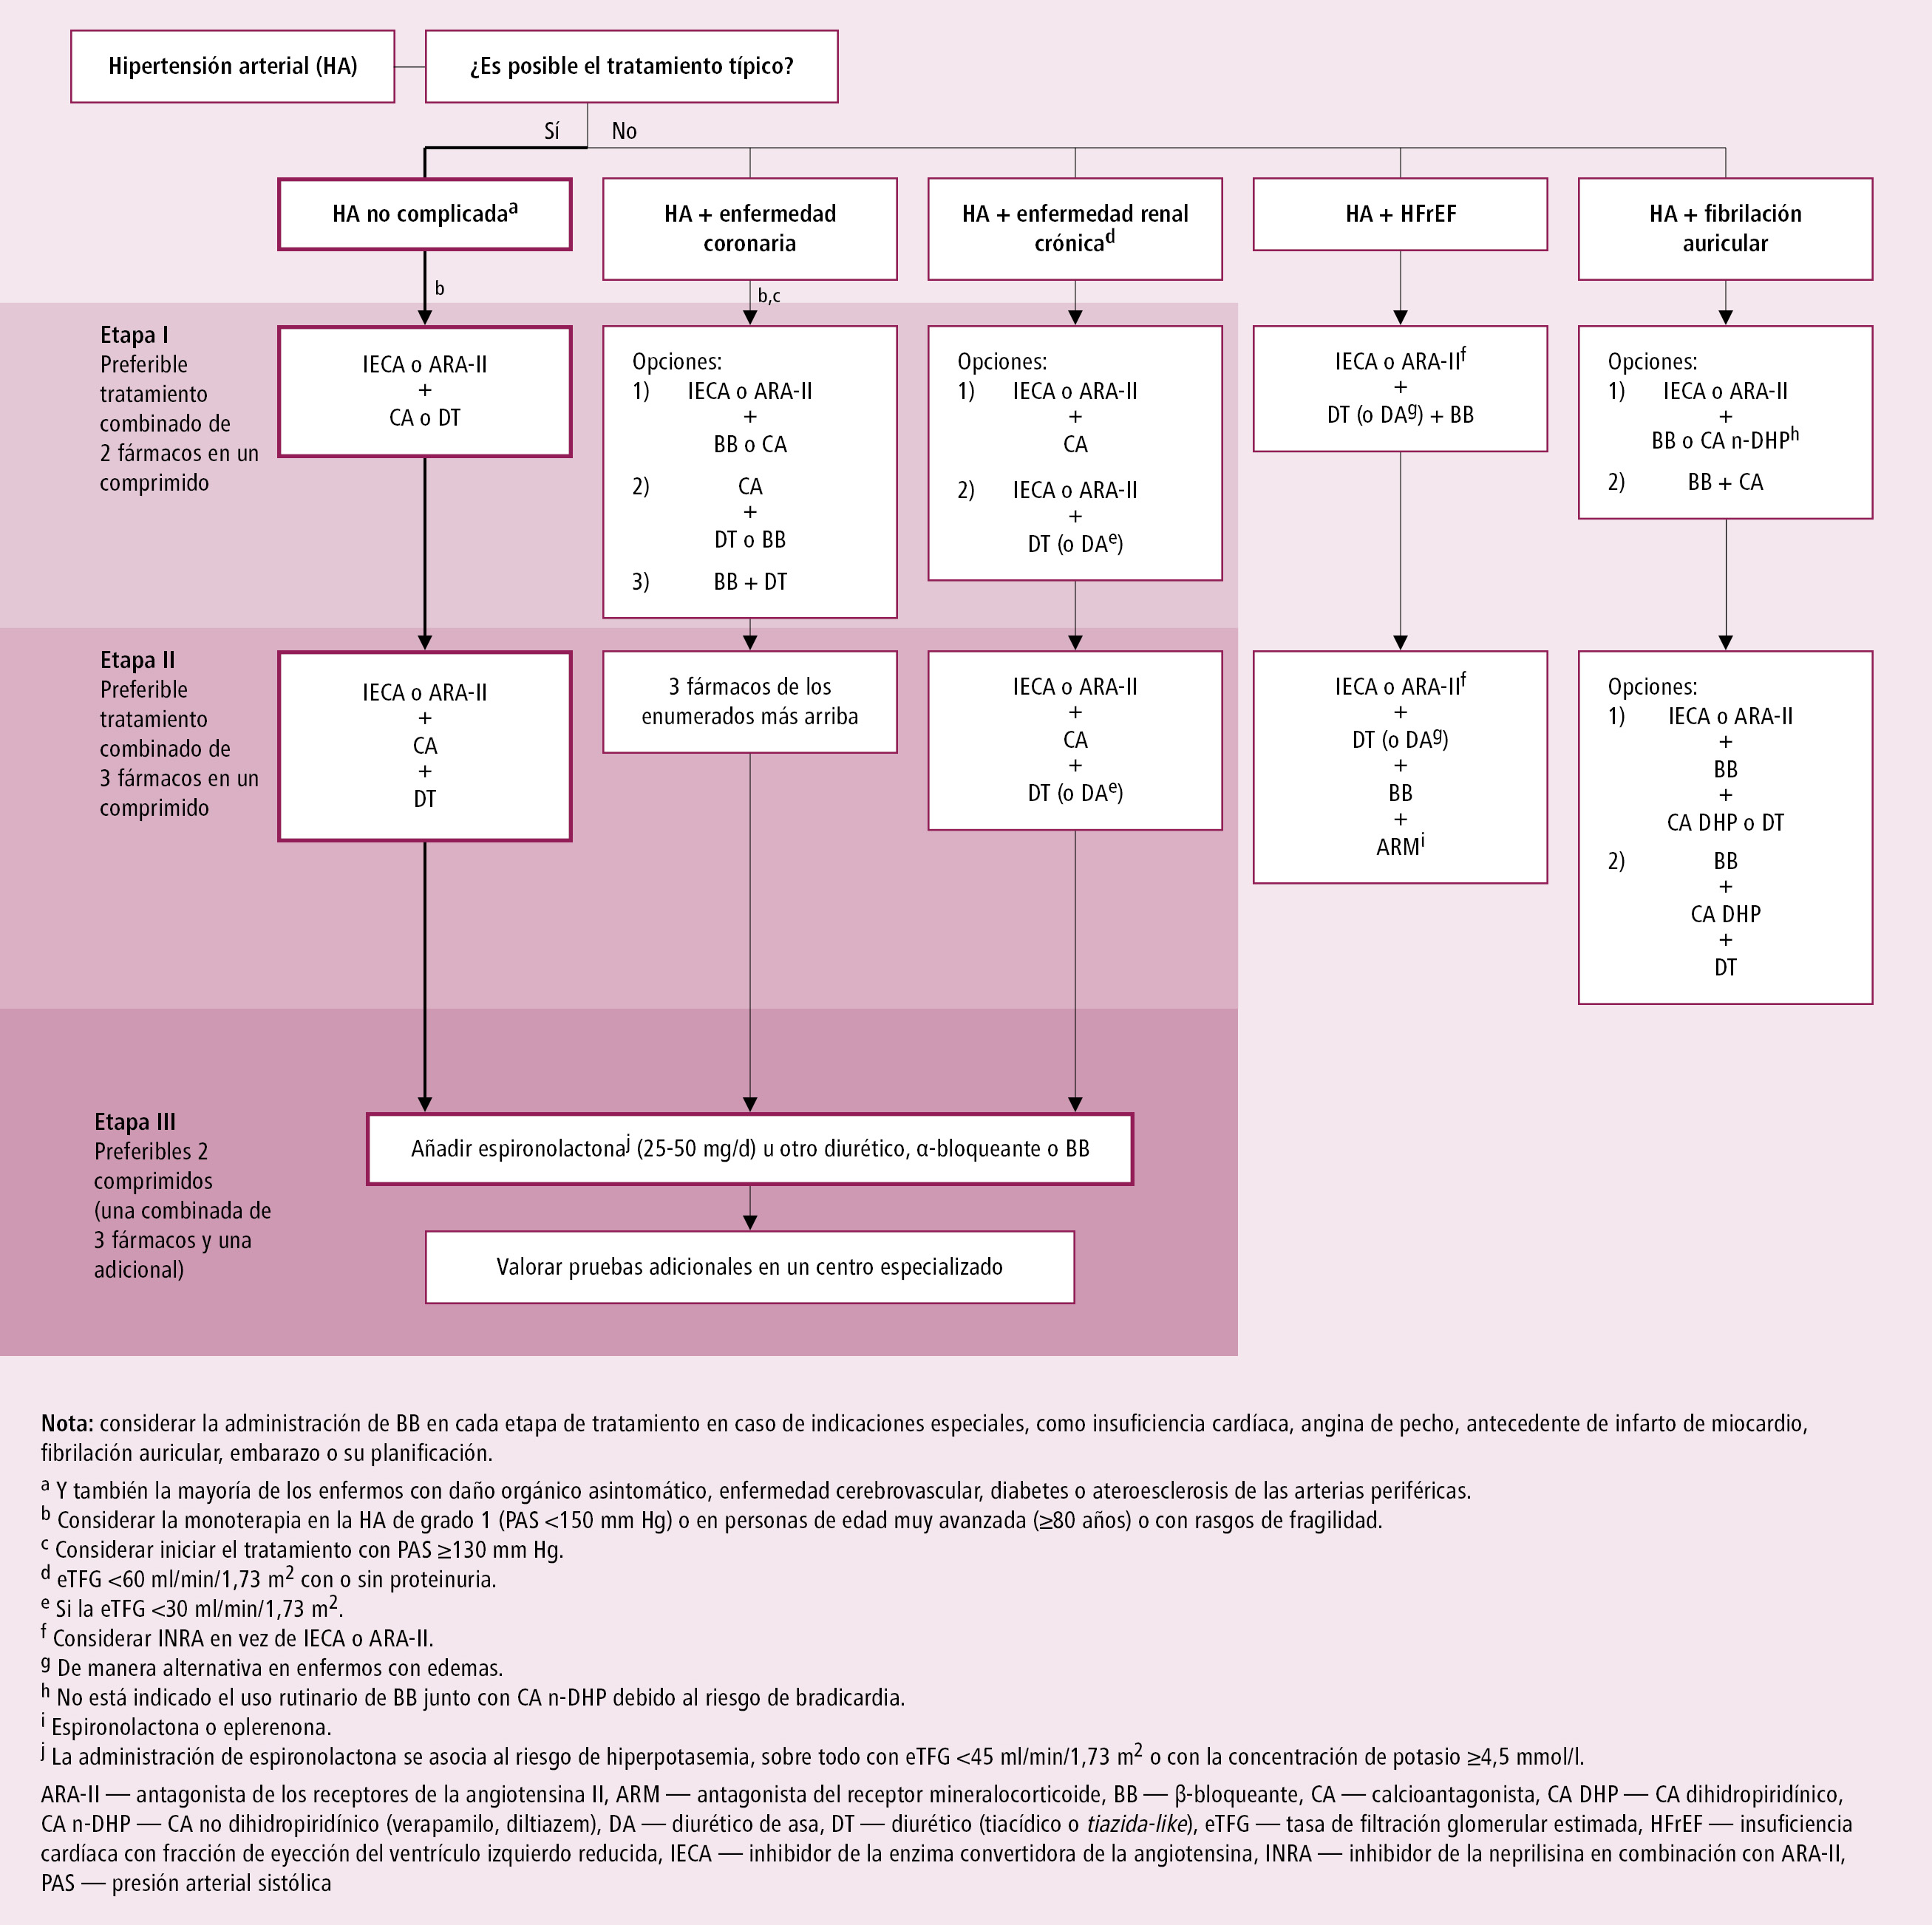    Fig. 2.20-1.  Tratamiento farmacológico de la hipertensión arterial (a partir de las guías de la ESC y ESH 2018, modificado) 